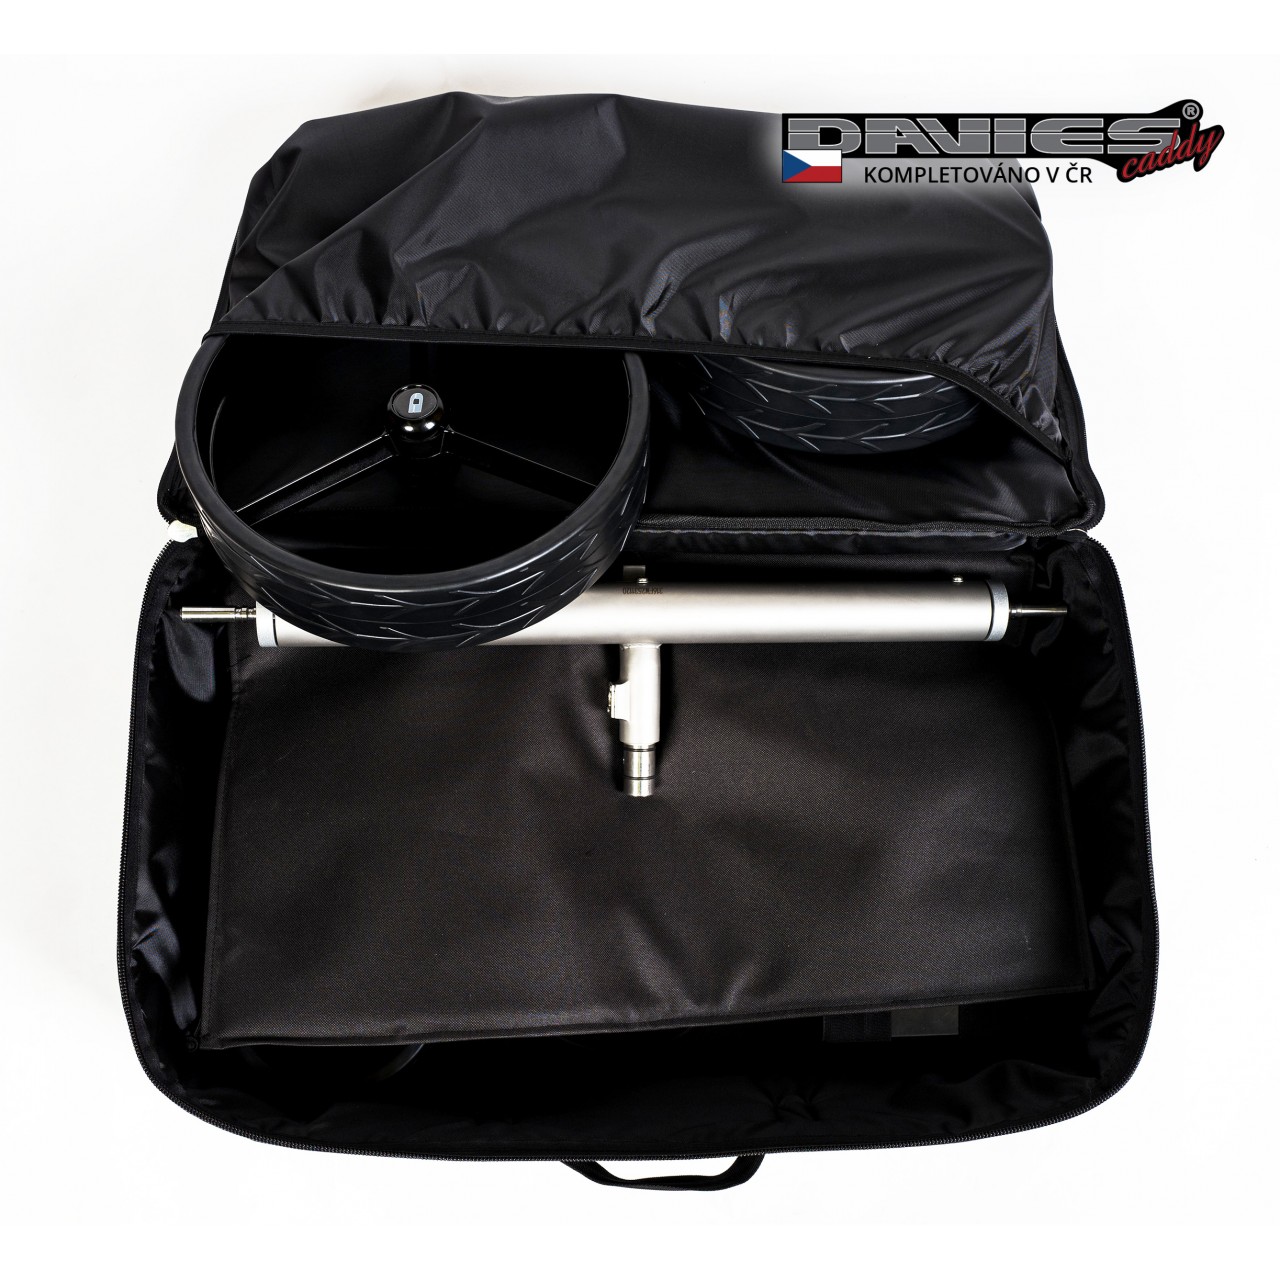 Pøepravní kufr pro vozík DAVIES CADDY PREMIUM s umístìním pro baterii - zvìtšit obrázek